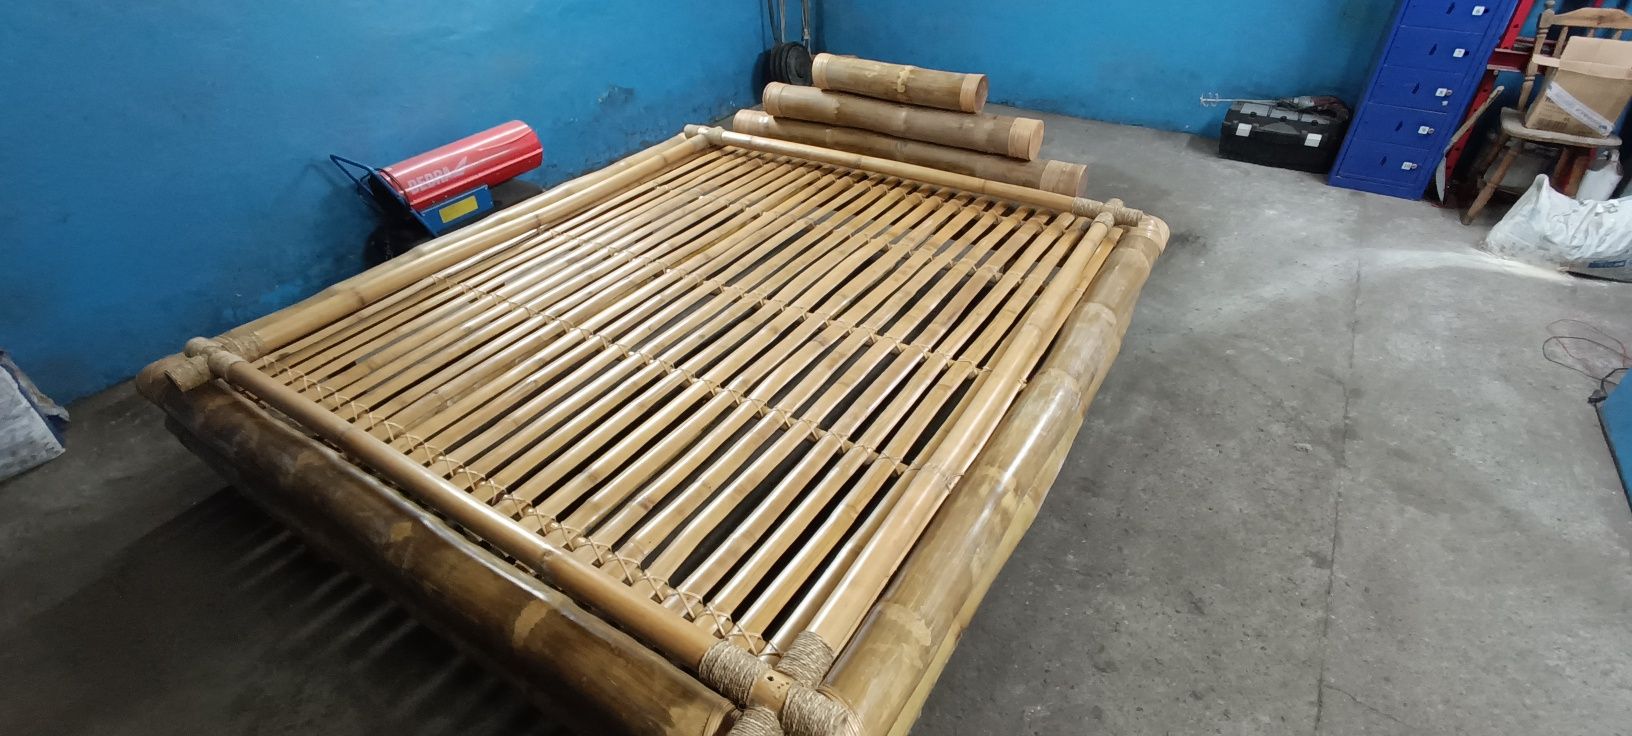 Łóżko bambusowe sypialniane